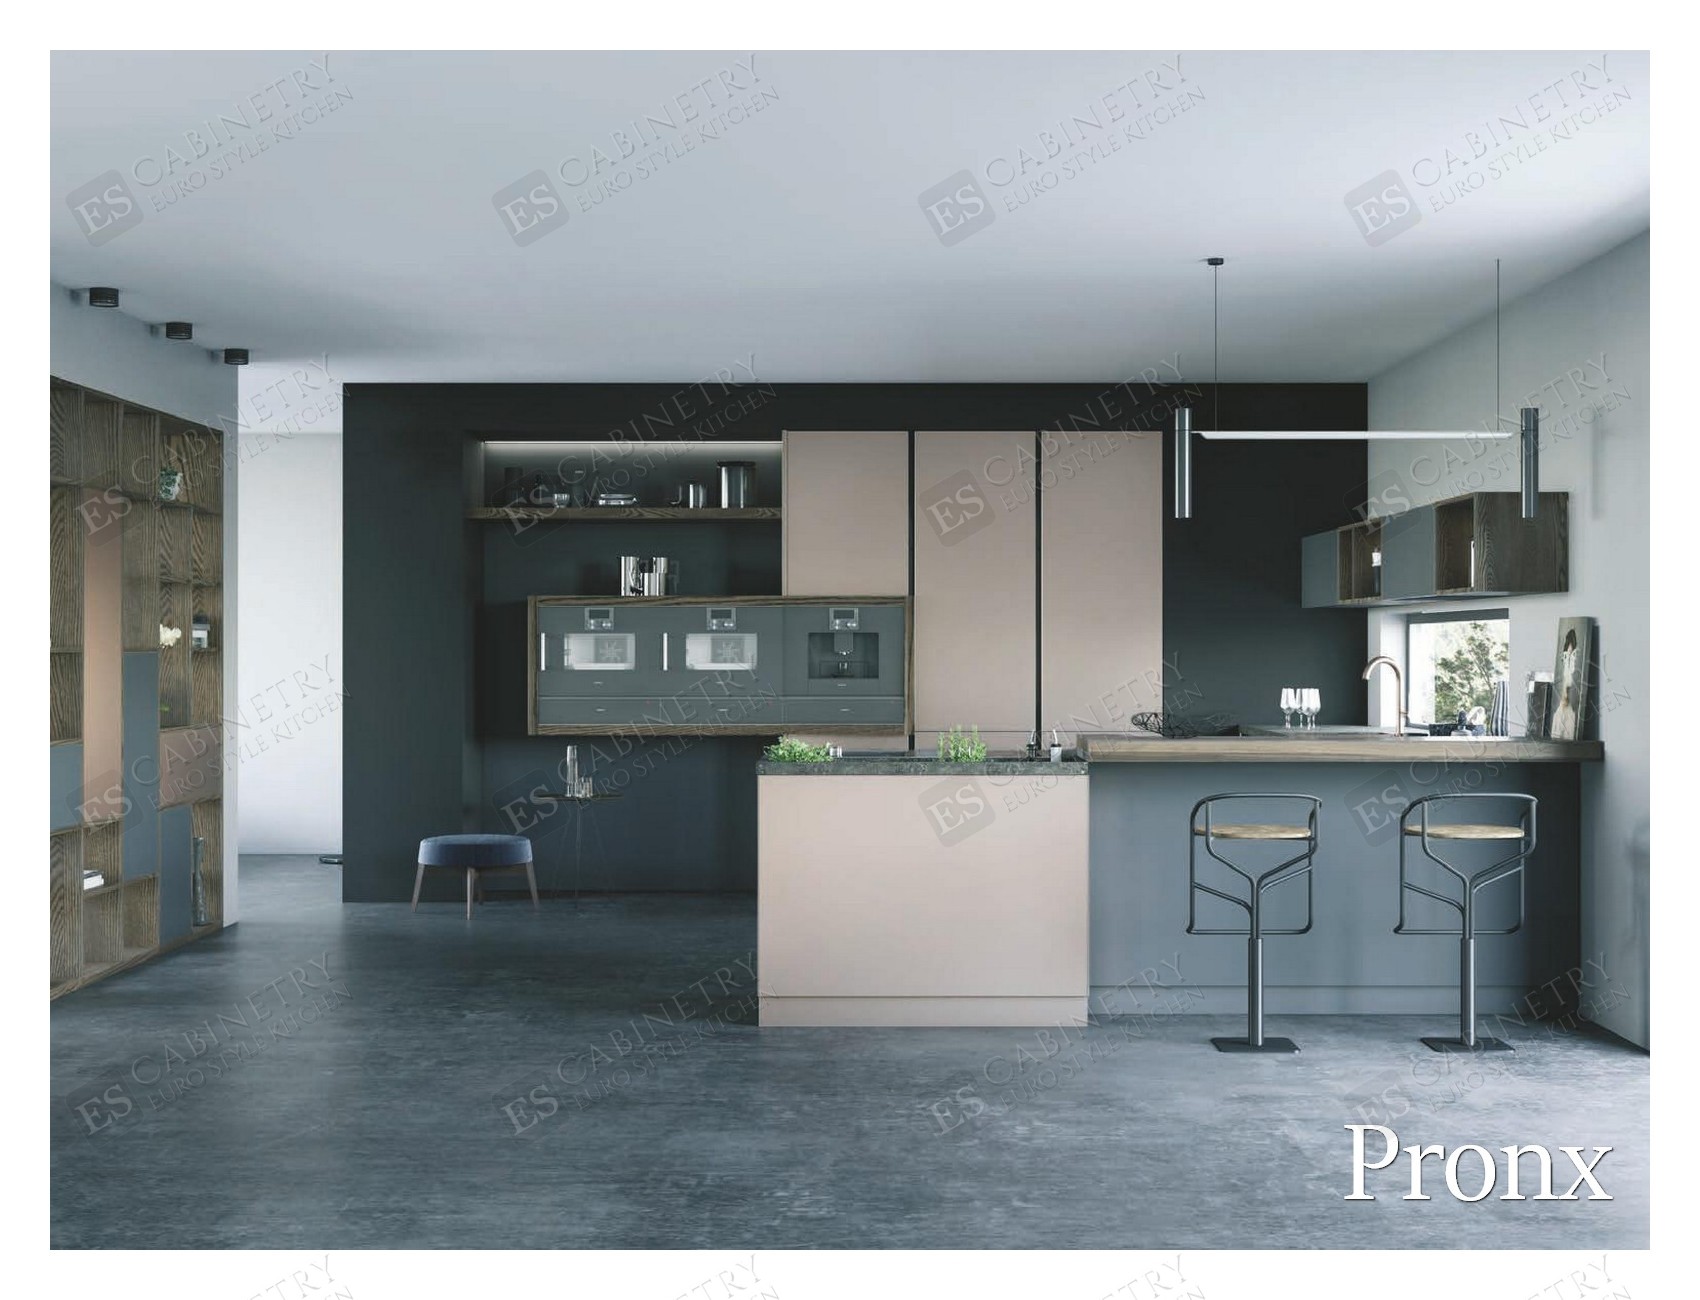 Pronx | Euro design kitchen